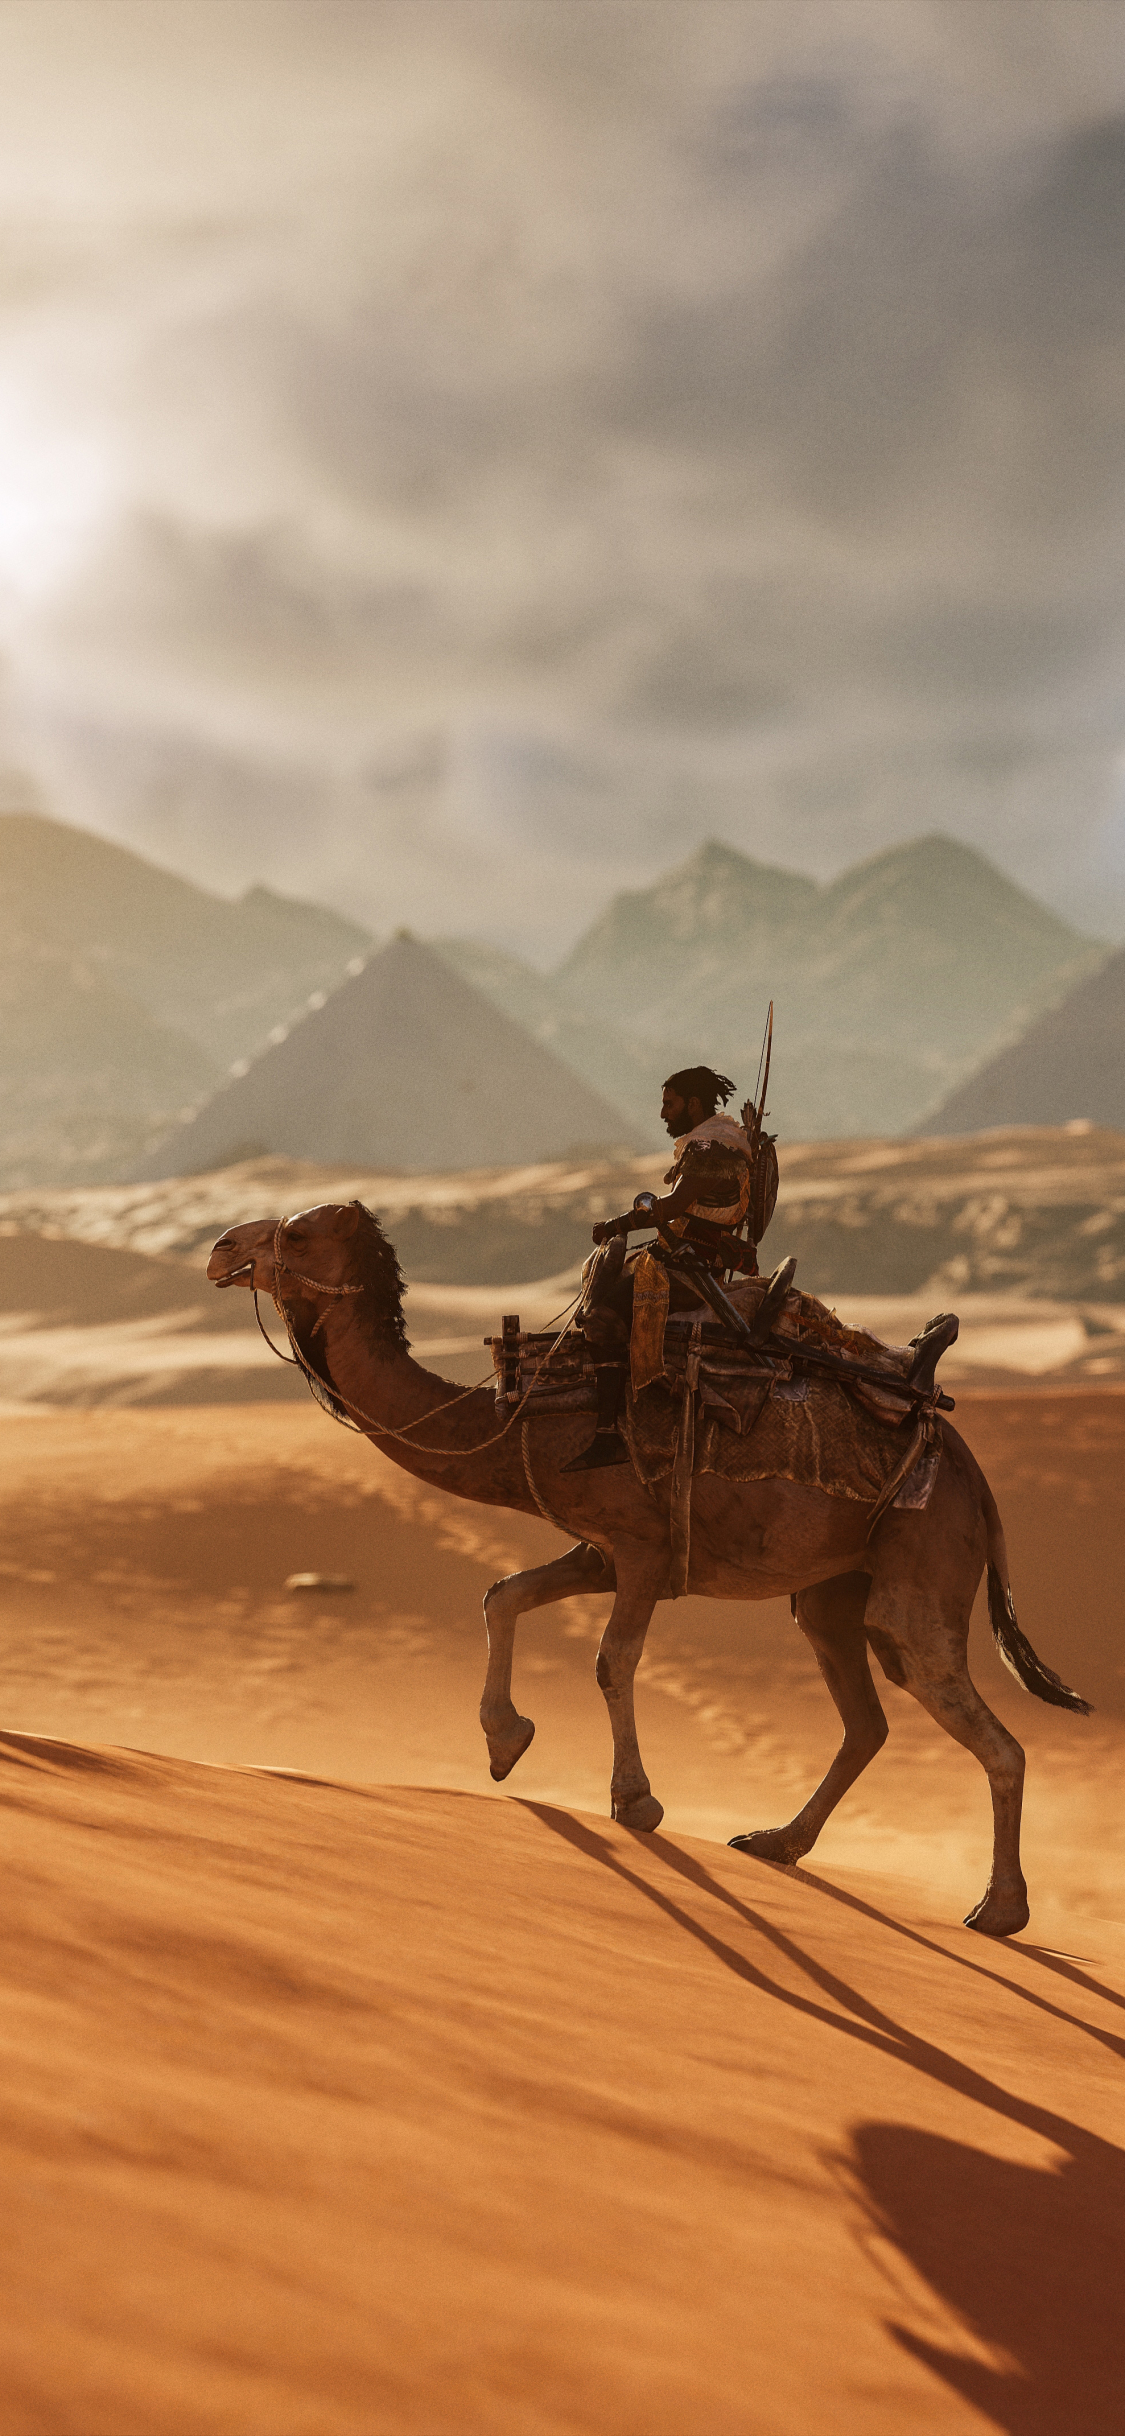 Descarga gratuita de fondo de pantalla para móvil de Arena, Desierto, Guerrero, Camello, Videojuego, Assassin's Creed, Assassin's Creed: Origins.